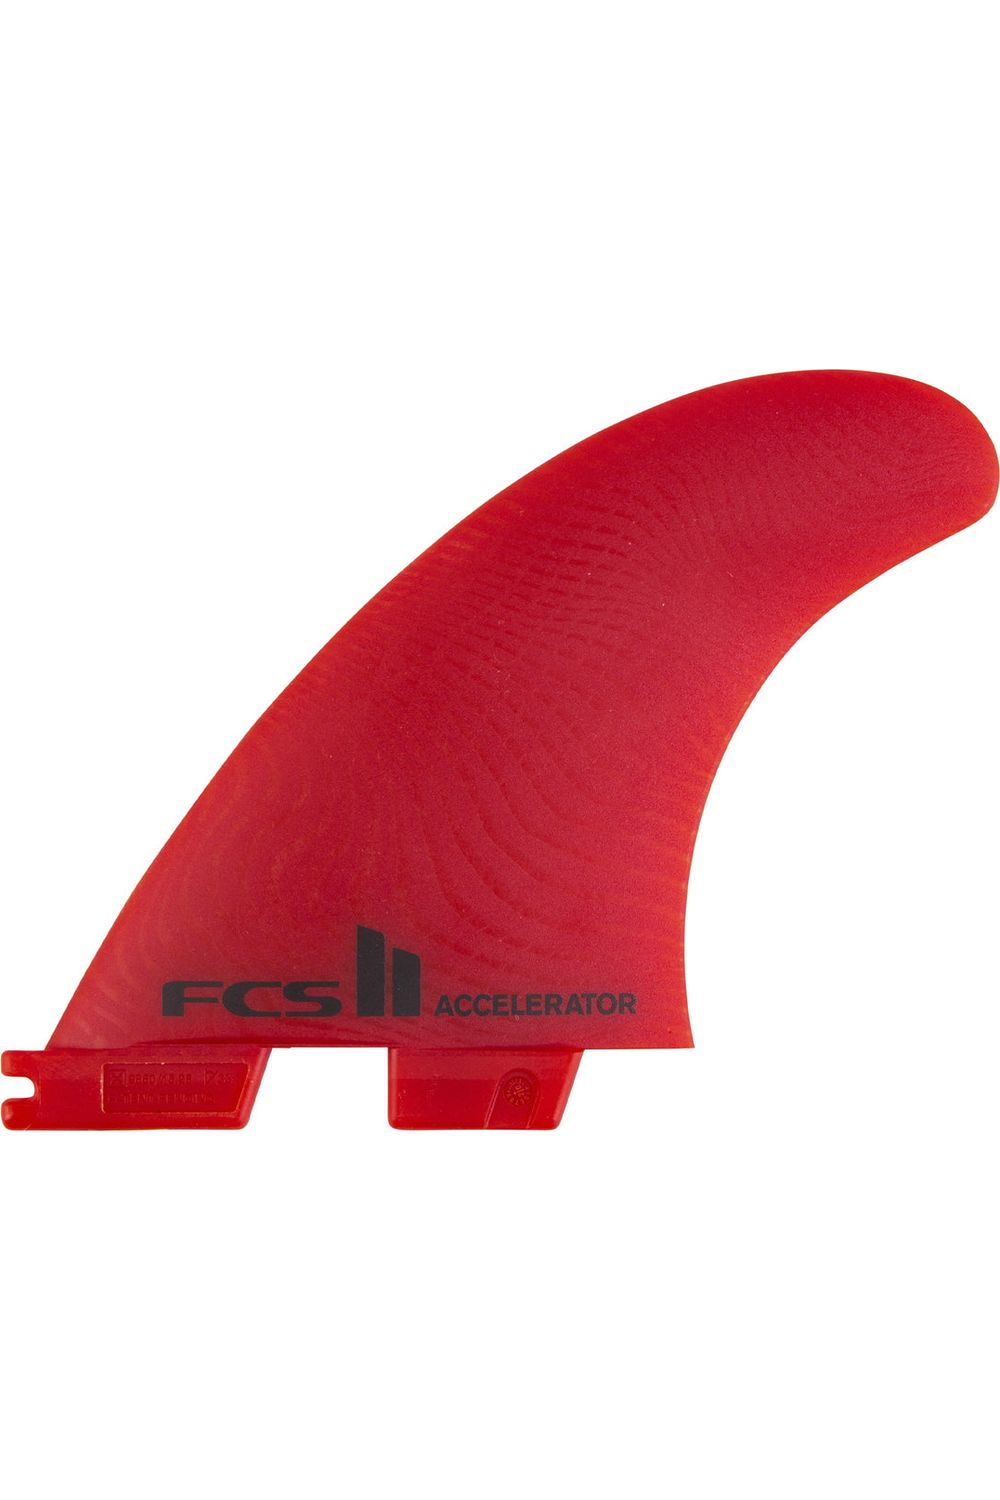 FCS II Accelerator Neo Glass Medium Red Tri Fins